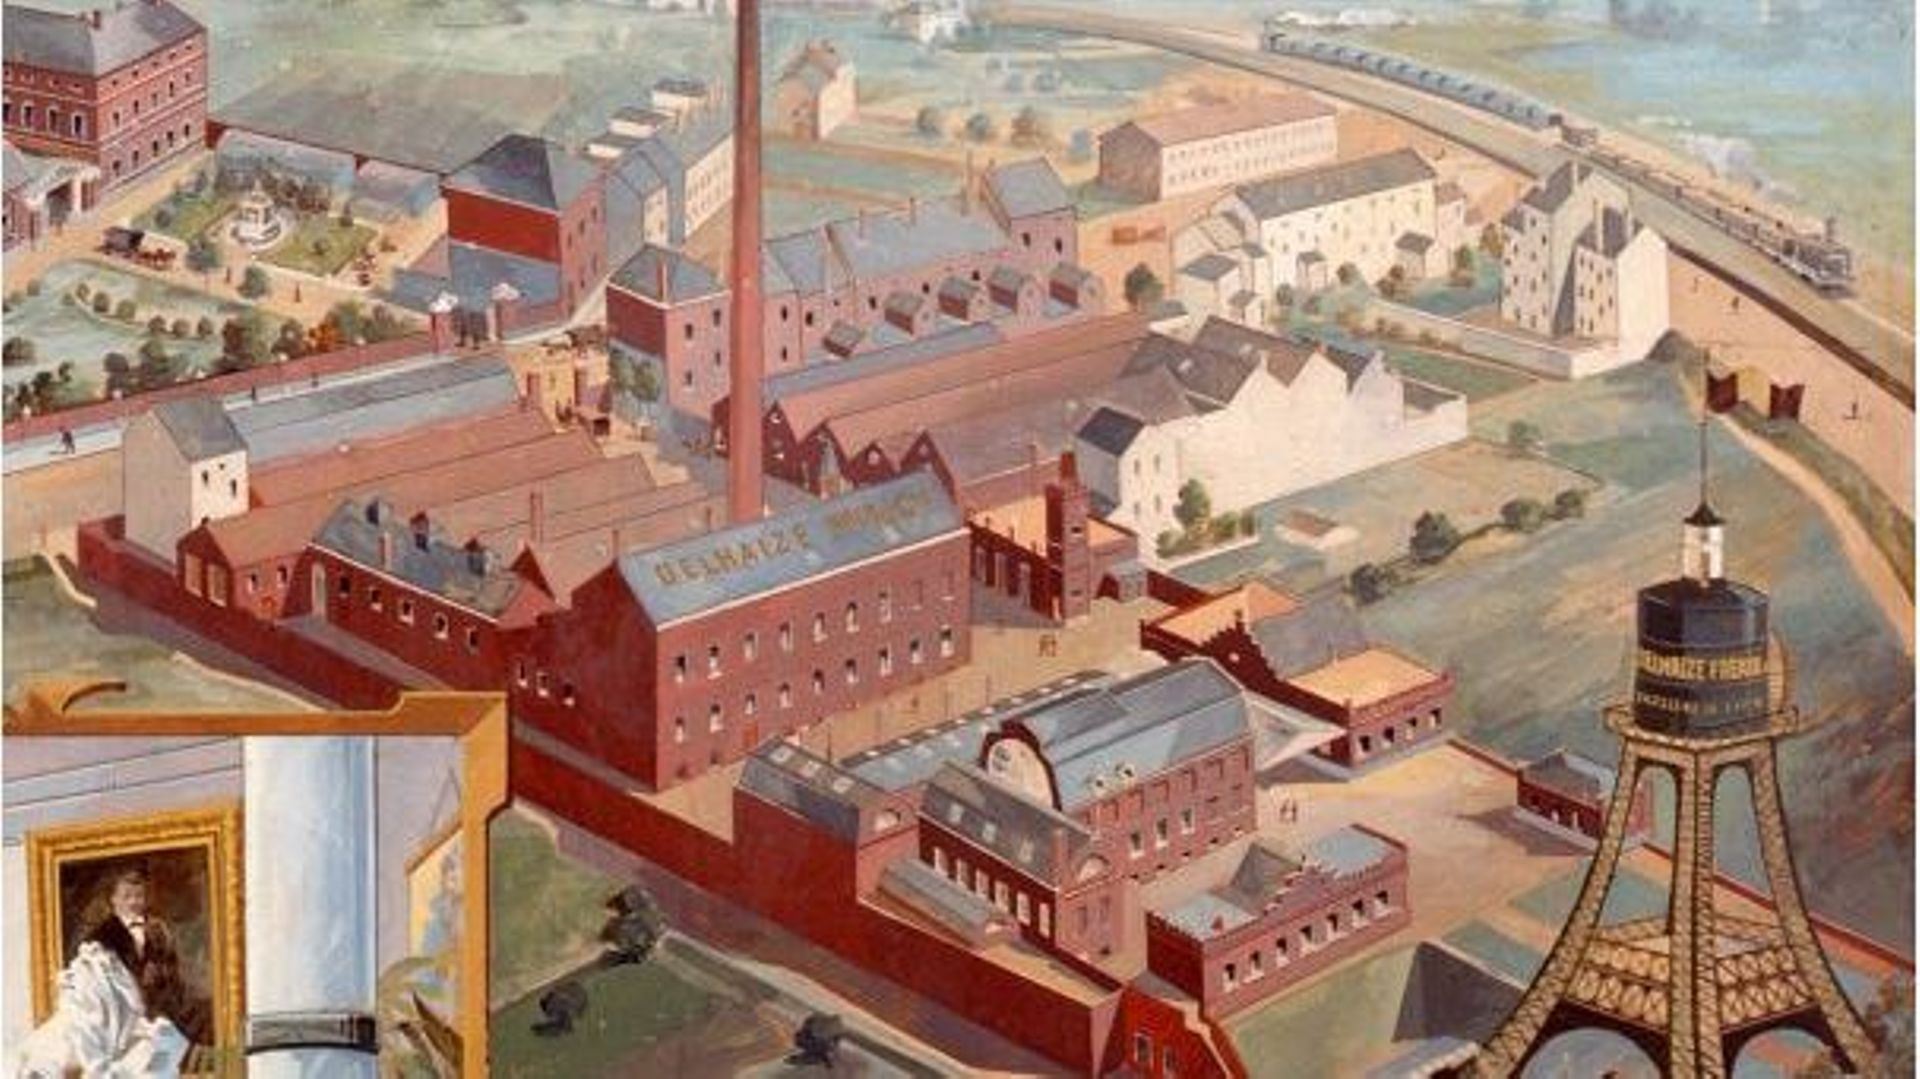 La "cité industrielle" de Delhaize à Molenbeek vers 1900